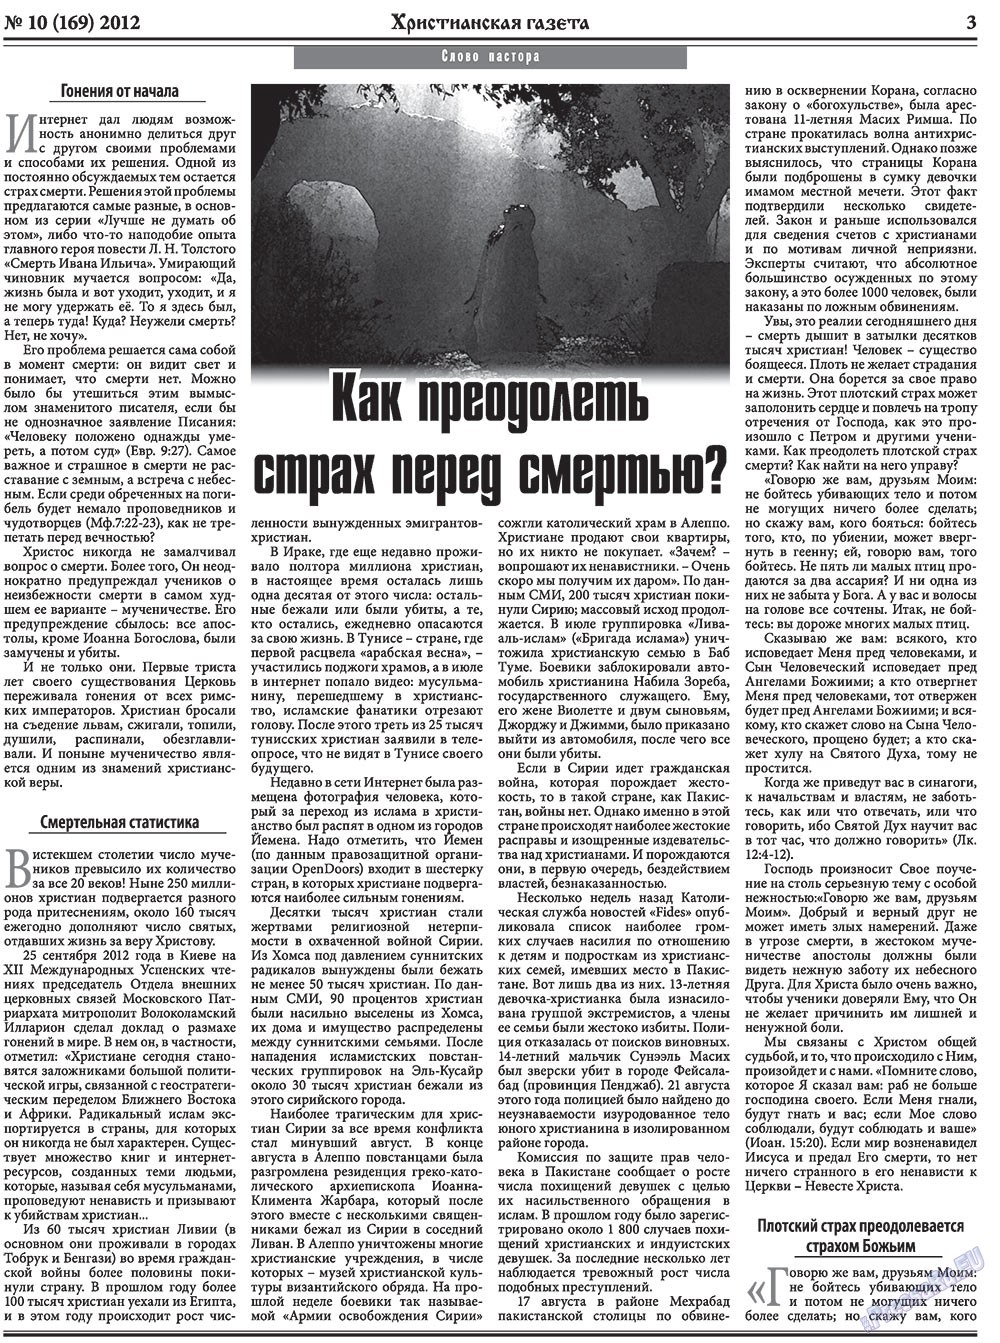 Христианская газета, газета. 2012 №10 стр.3